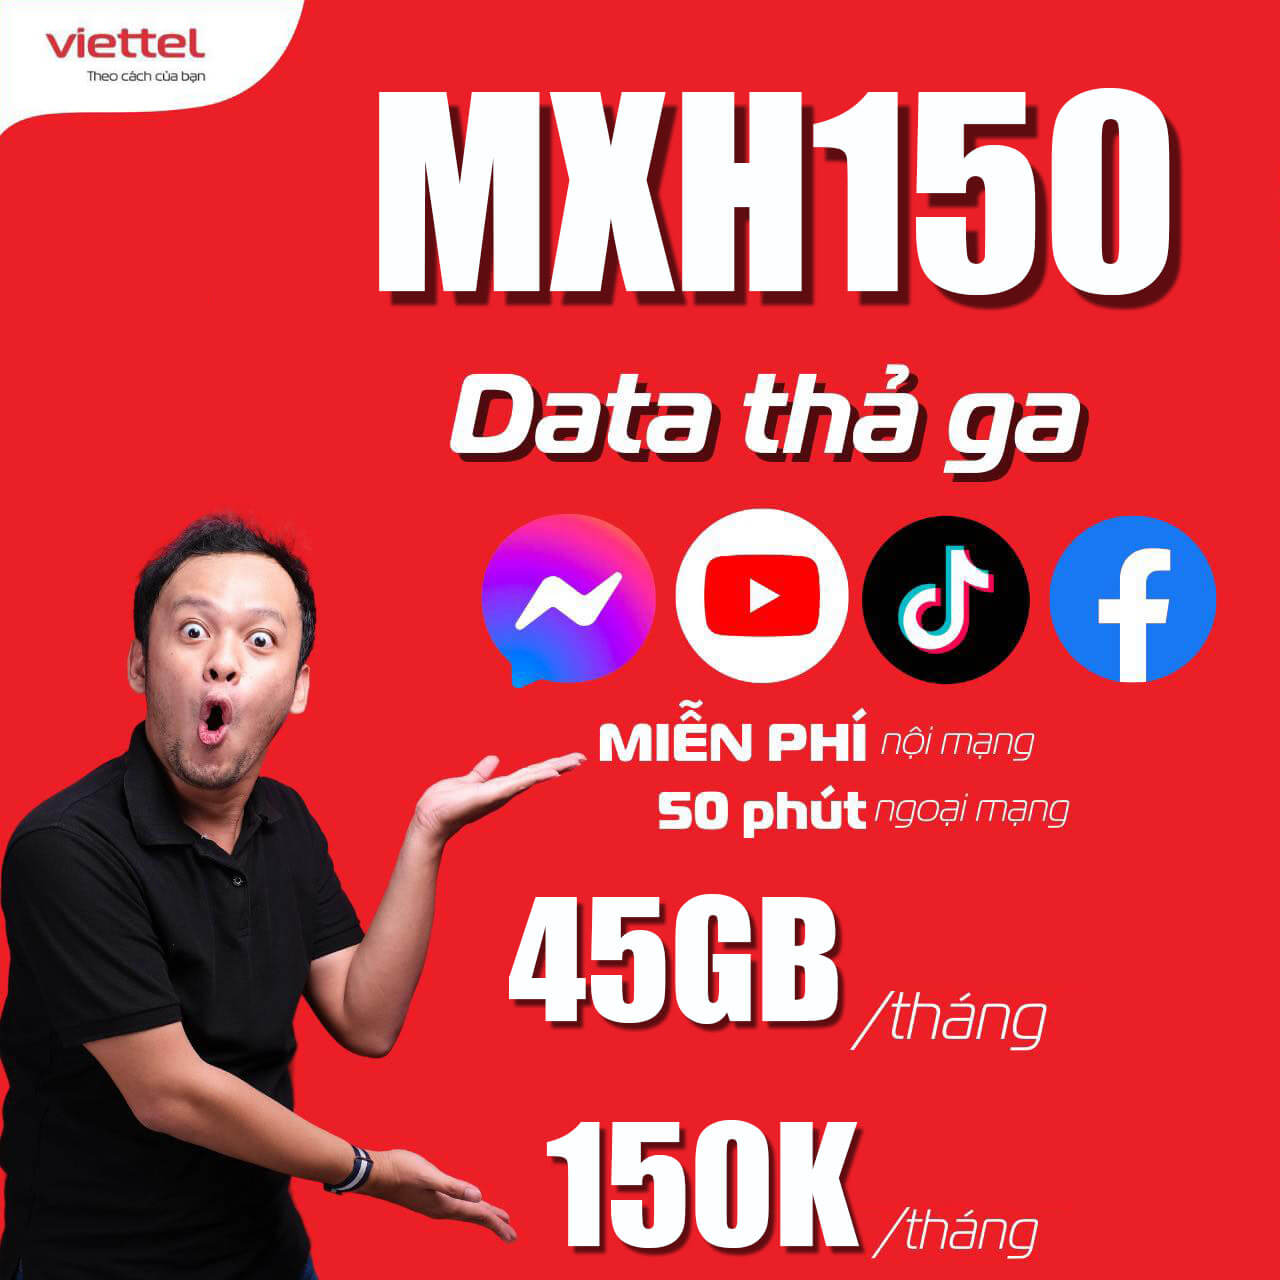 Đăng ký gói MXH150 Viettel có 45GB, miễn phí Data MXH giá 150k 1 tháng